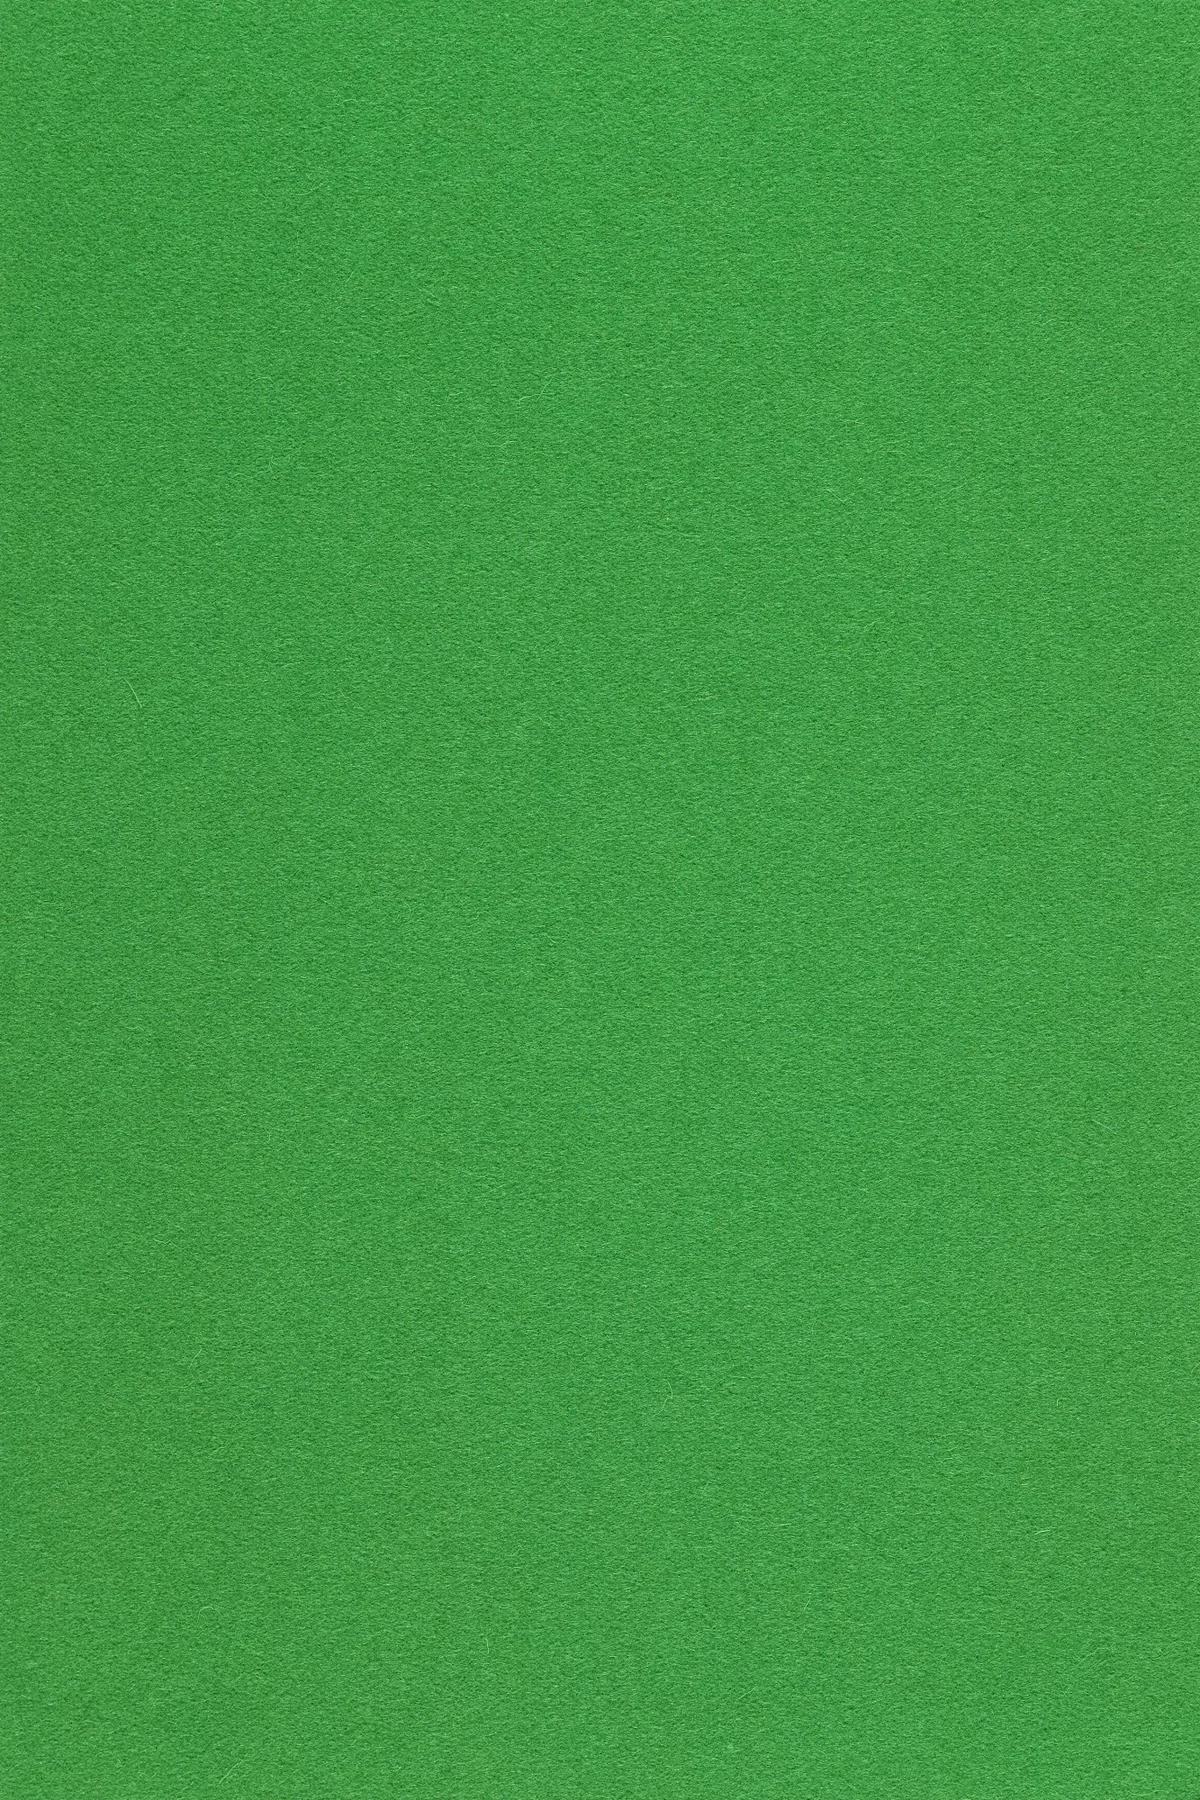 Fabric sample Divina 3 922 green